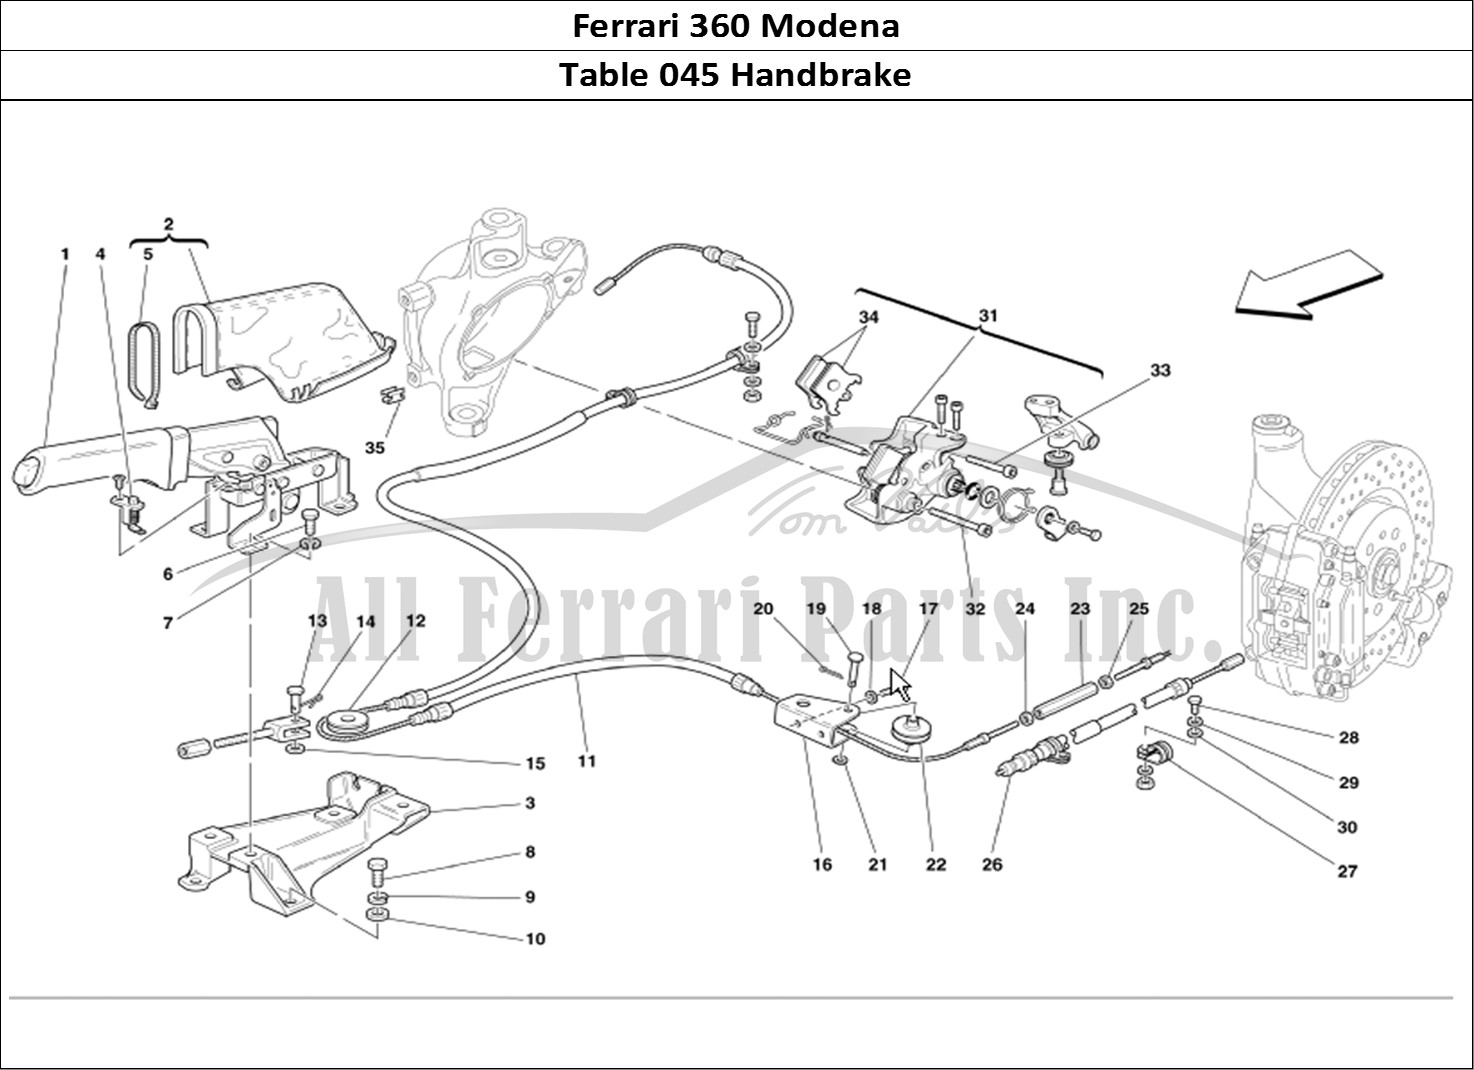 Ferrari Parts Ferrari 360 Modena Page 045 Hand-Brake Control